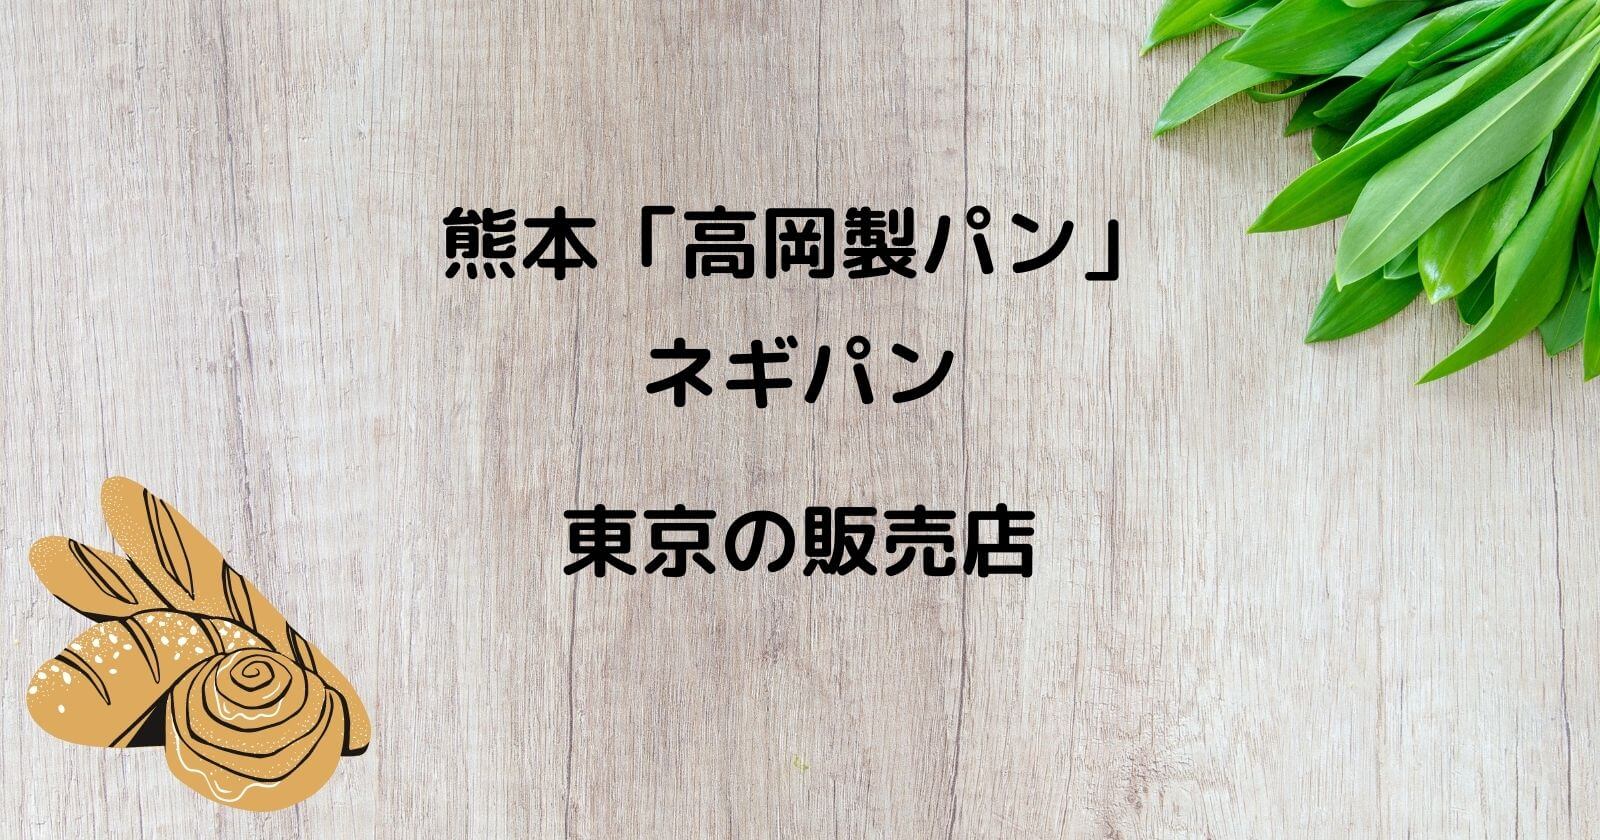 熊本「高岡製パン」ネギパンが買える東京のお店